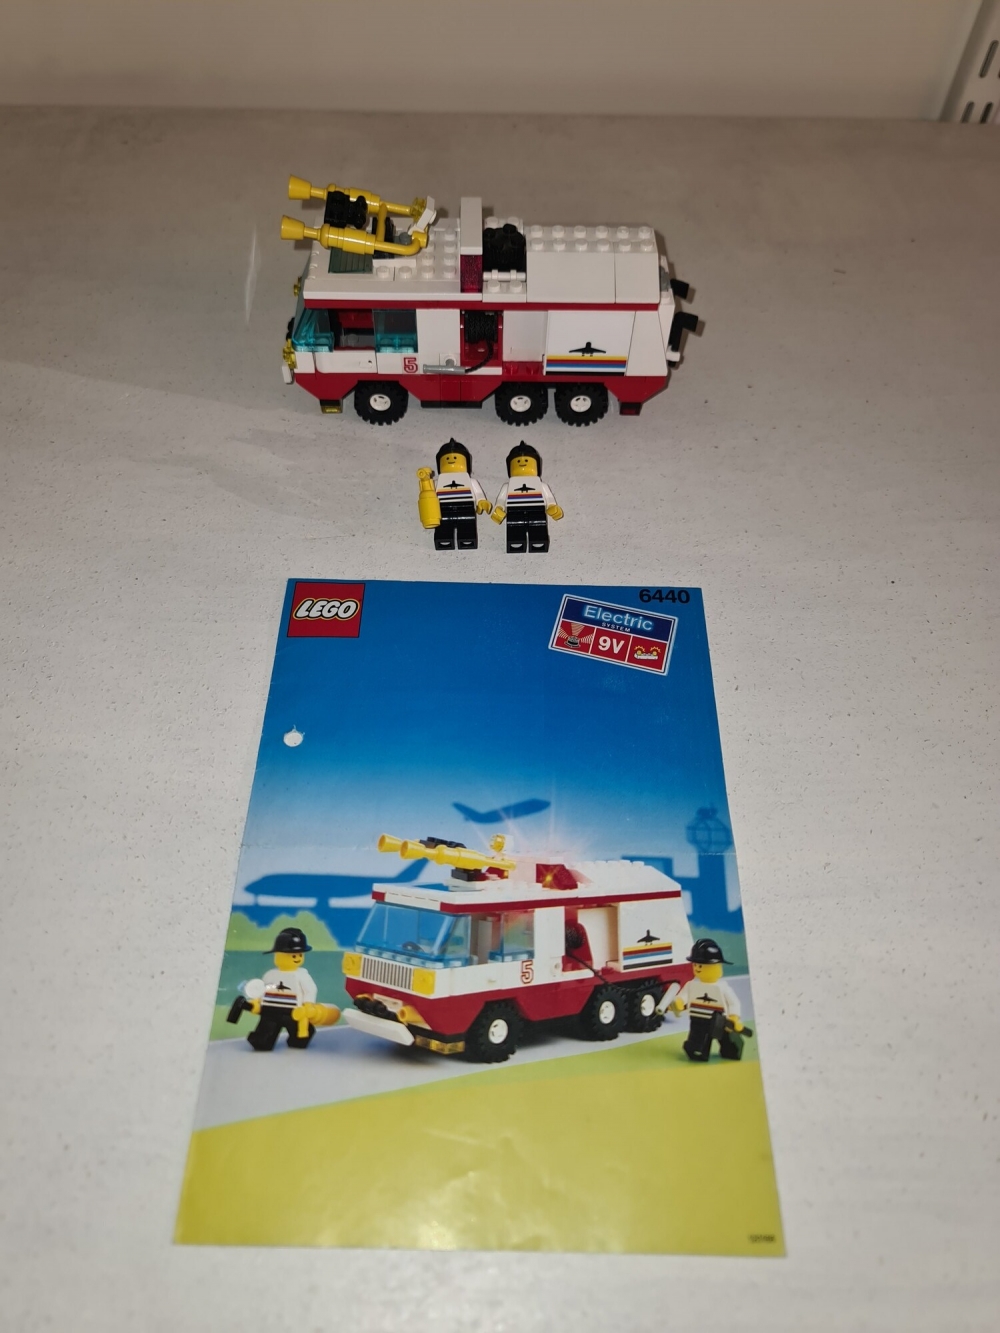 Sett 6440 fra Lego Claassic Town serien.
Veldig fint sett.
Komplett med manual.